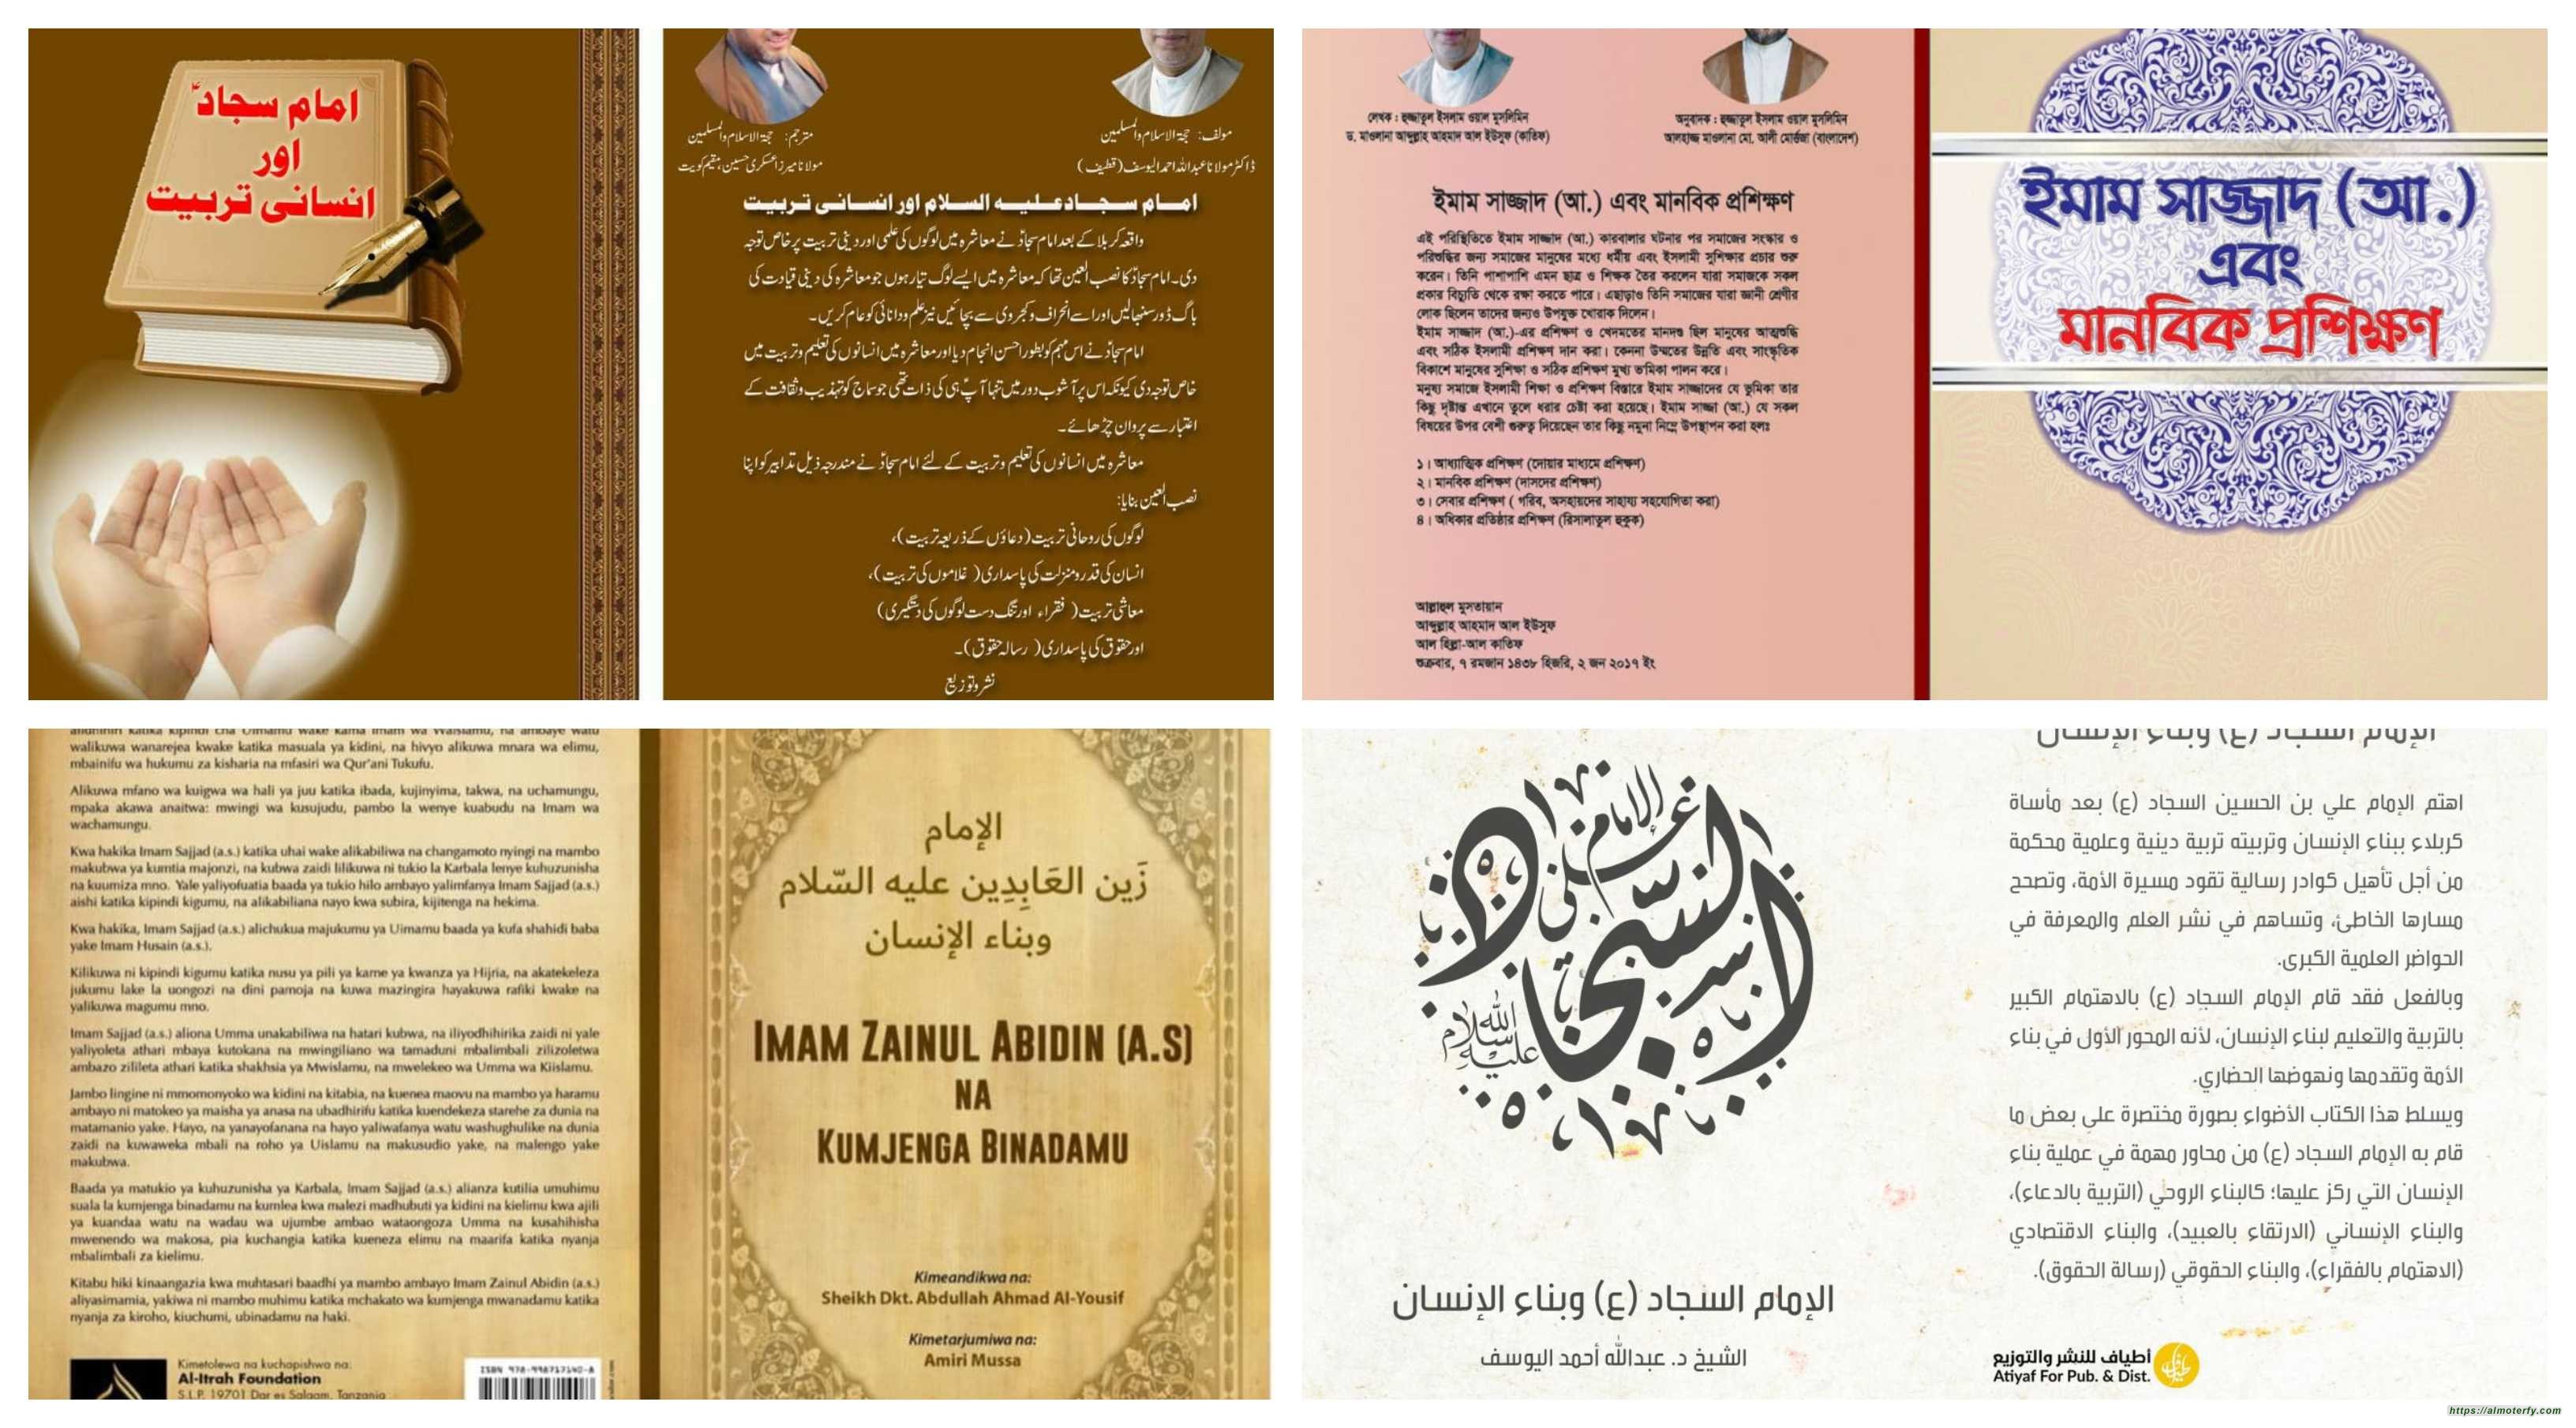 كتاب الشيخ اليوسف: «الإمام السجاد (ع) وبناء الإنسان» يصدر بخمس لغات عالمية